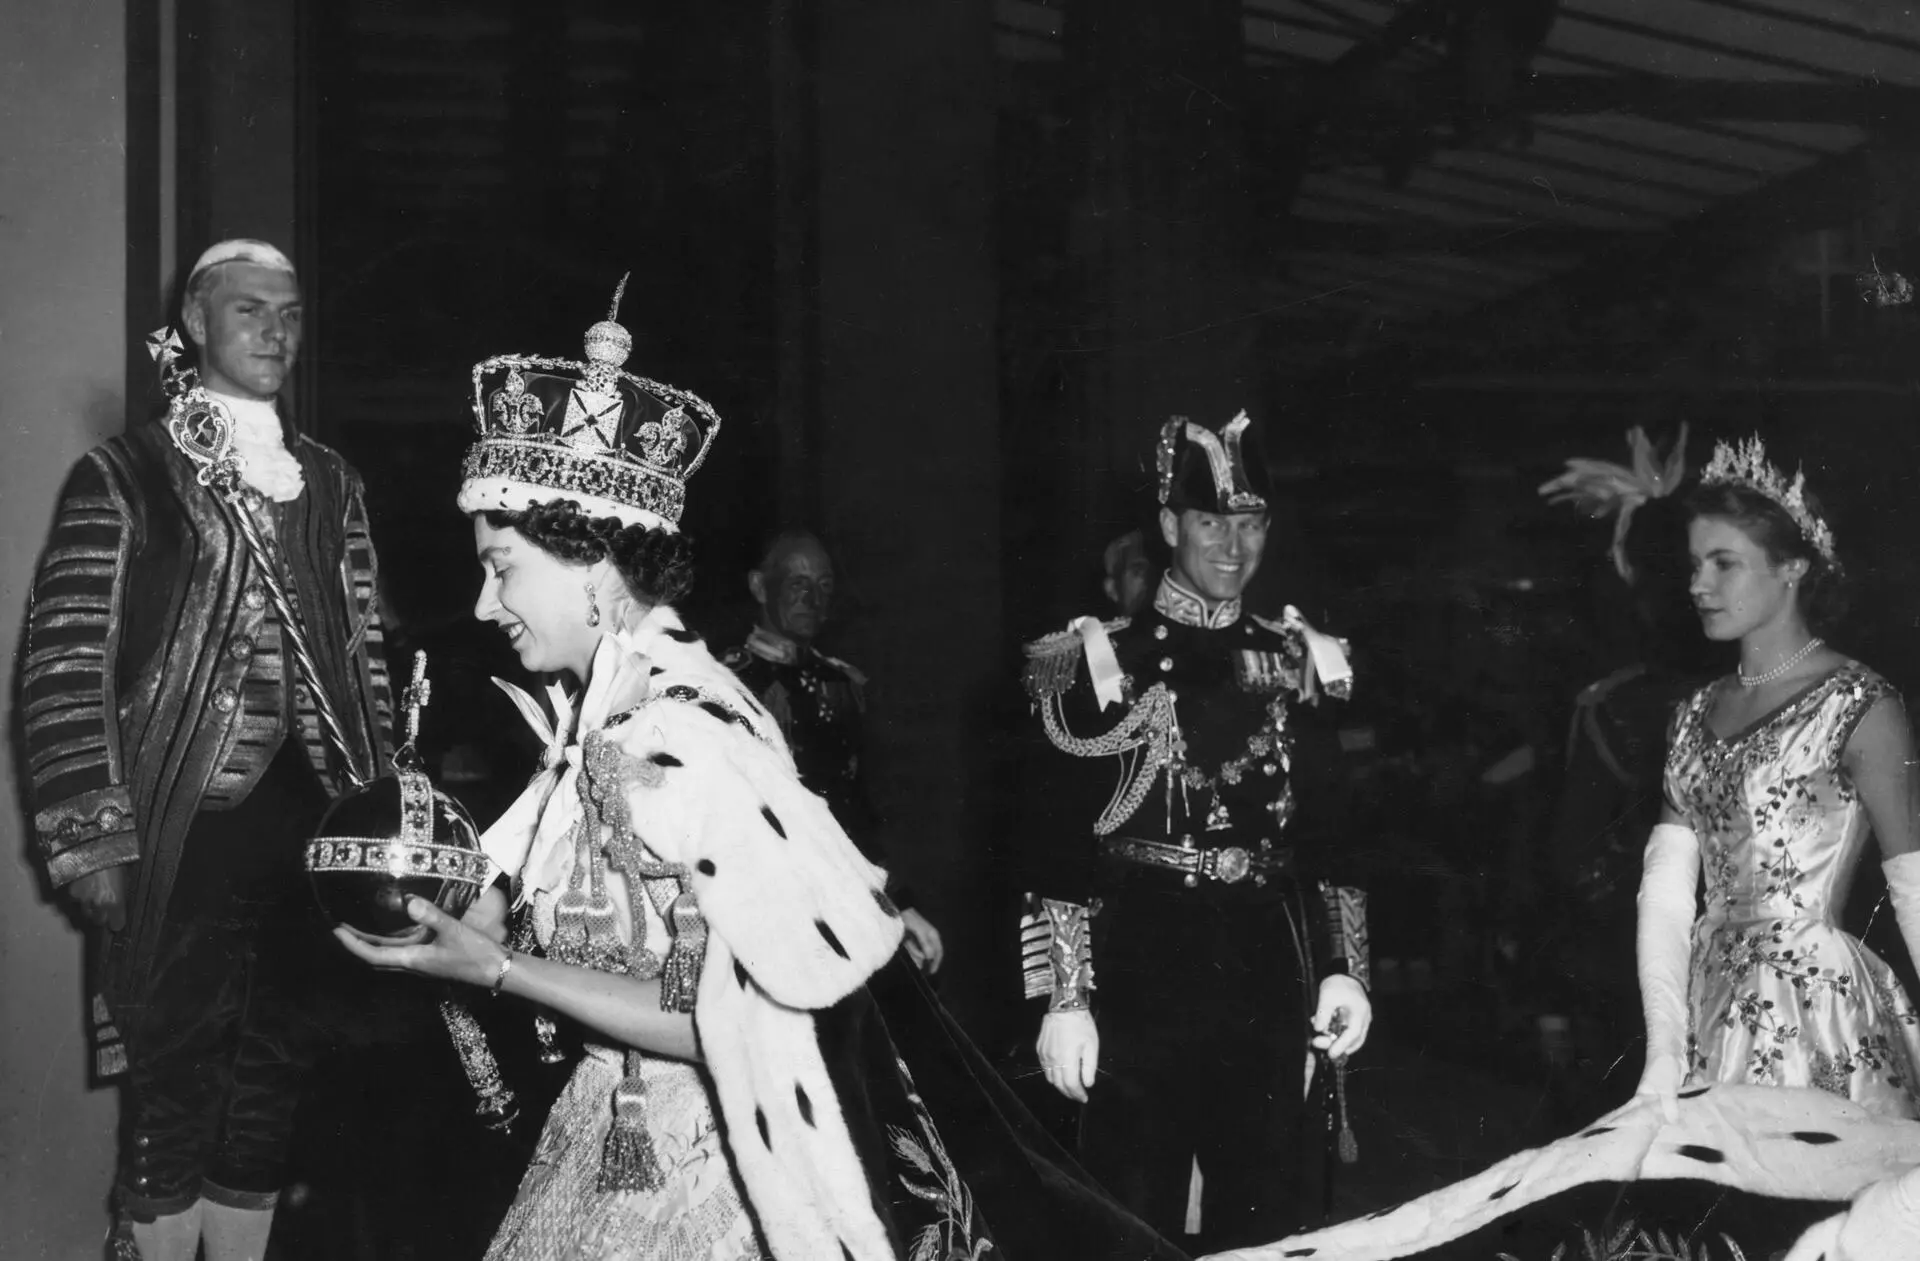 1953年6月2日、戴冠式を終えたエリザベス2世は、夫であるエディンバラ公爵に見守られながら、ウェストミンスター寺院からロンドンのバッキンガム宮殿へと戻ってきた。 夫であるエディンバラ公の共犯的な視線の中、エリザベス2世は1953年6月2日の戴冠式を終え、ウェストミンスター寺院からロンドンのバッキンガム宮殿へと戻ってきた。© Topical Press Agency/Getty